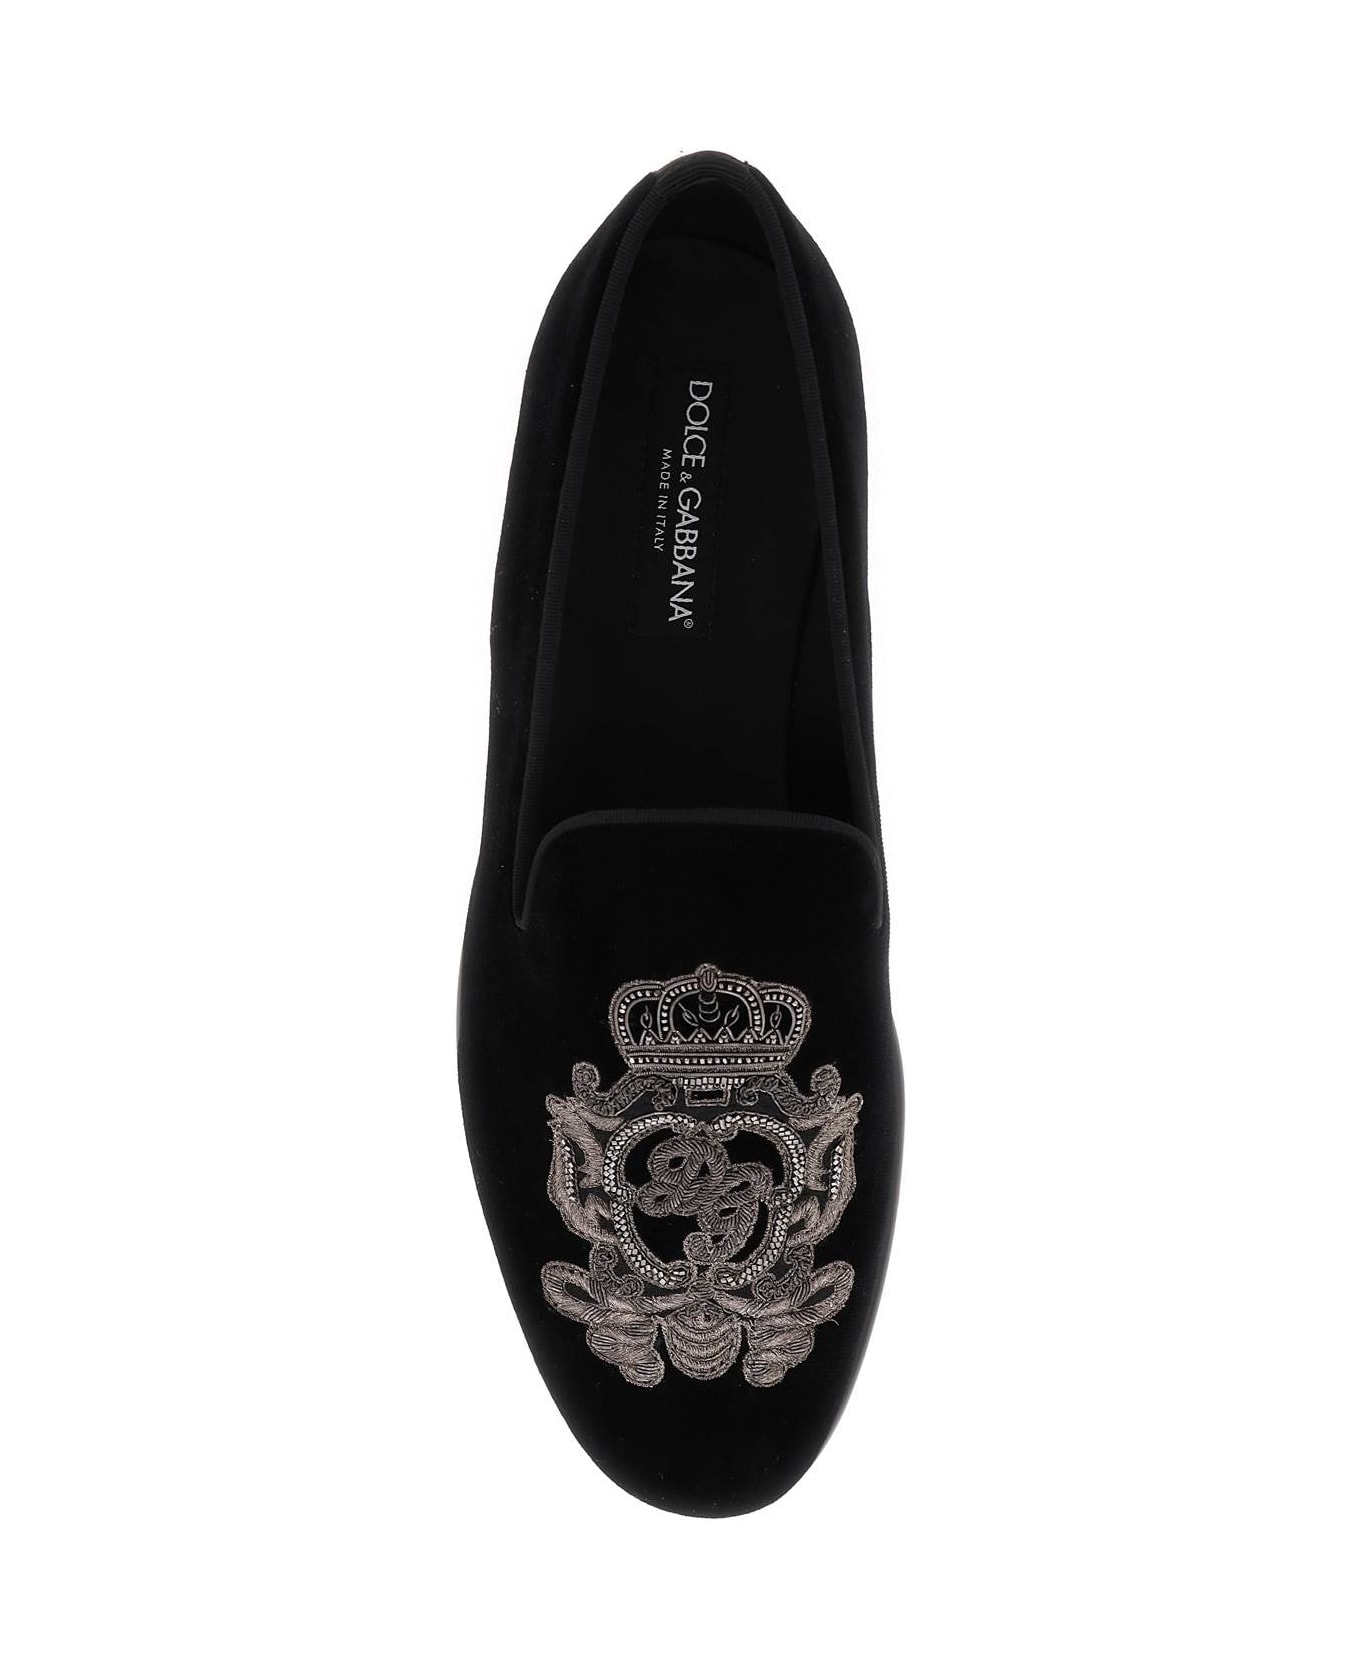 Dolce & Gabbana Velvet Loafers - Black